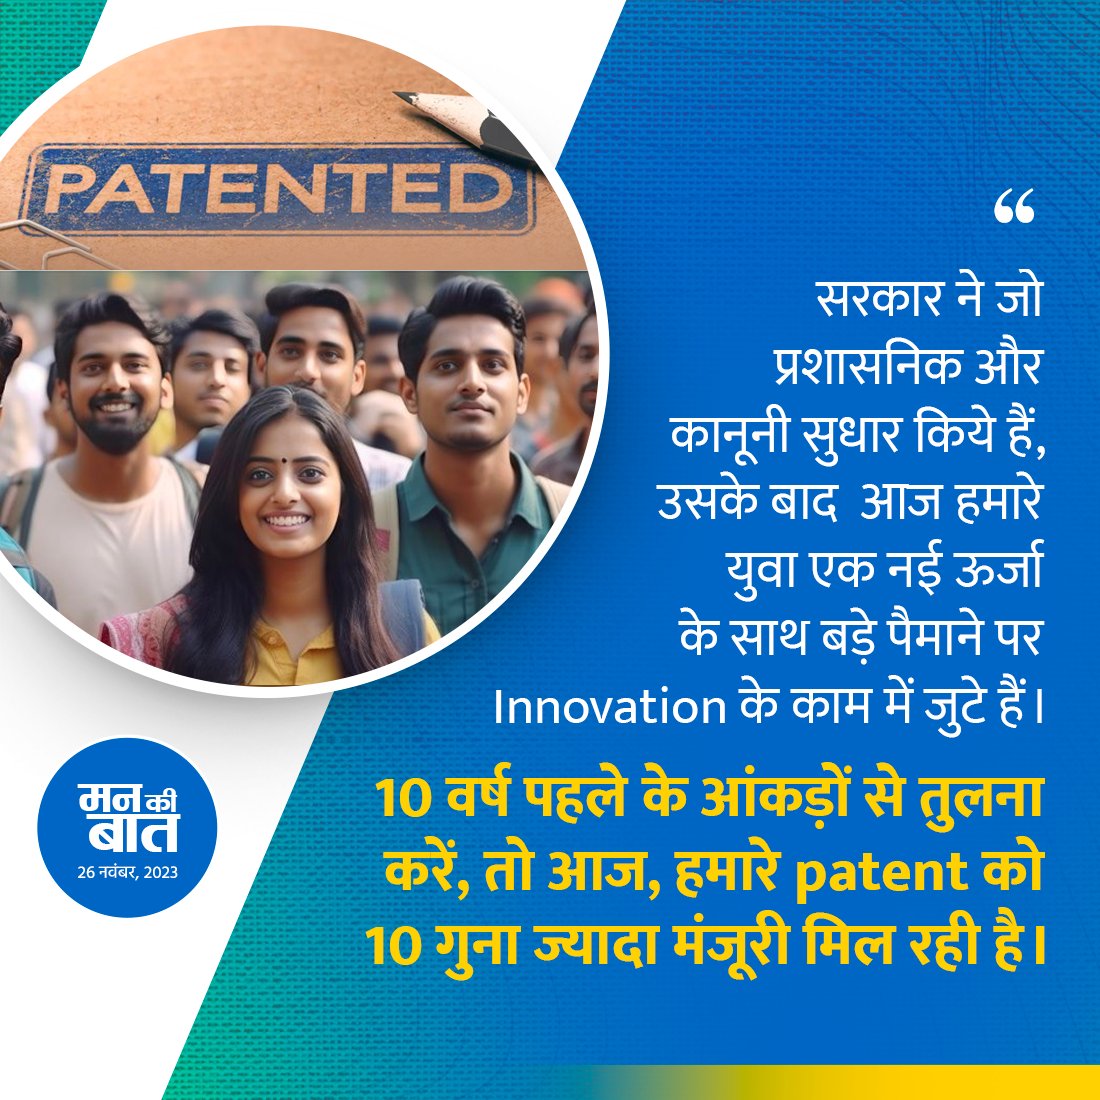 Intelligence, Idea और Innovation आज भारतीय युवाओं की पहचान है। इसमें Technology के Combination से उनकी Intellectual Properties में निरंतर बढ़ोतरी हो, ये अपने आप में देश के सामर्थ्य को बढ़ाने वाली महत्वपूर्ण प्रगति है। आपको ये जानकर अच्छा लगेगा कि 2022 में भारतीयों के Patent…